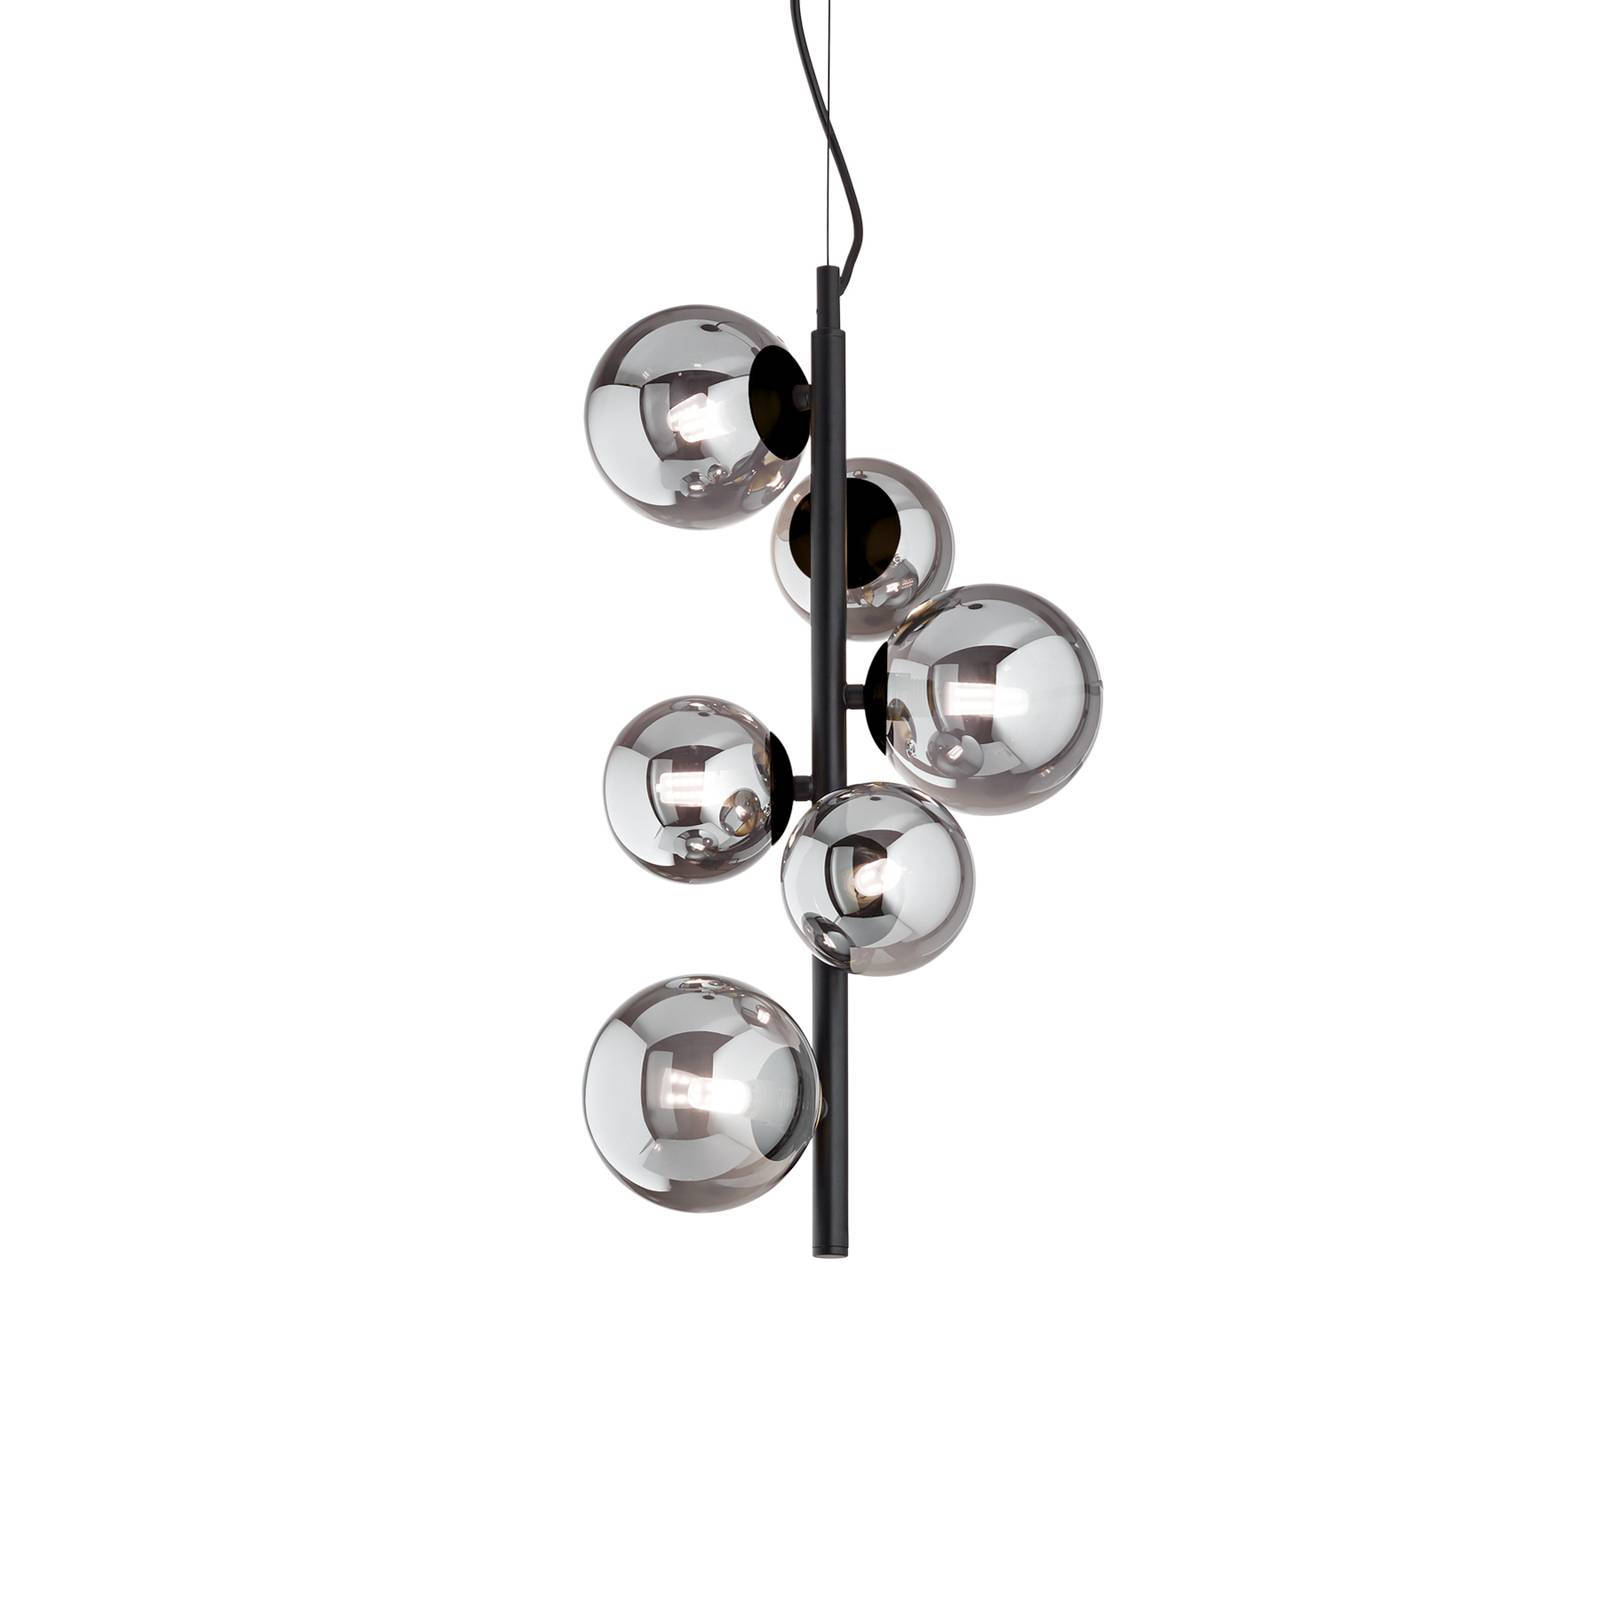 Ideallux Ideal Lux Perlage häng svart/svart 6 lampor Ø 26